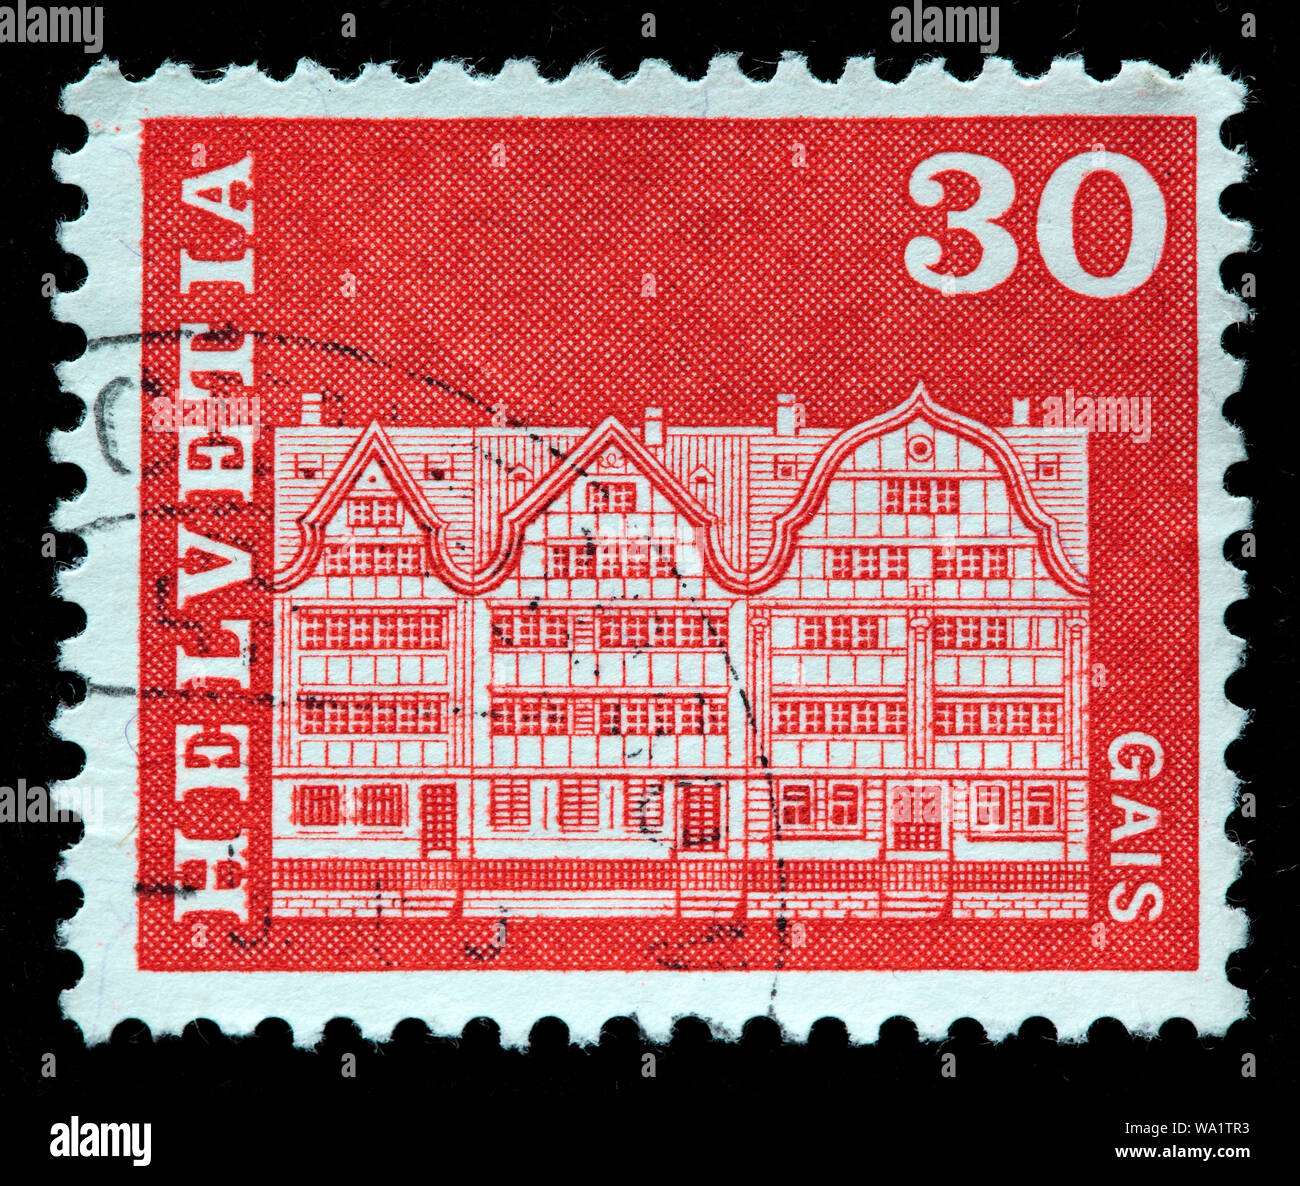 Village square houses, Gais, Appenzell Ausserrhoden, postage stamp, Switzerland, 1968 Stock Photo